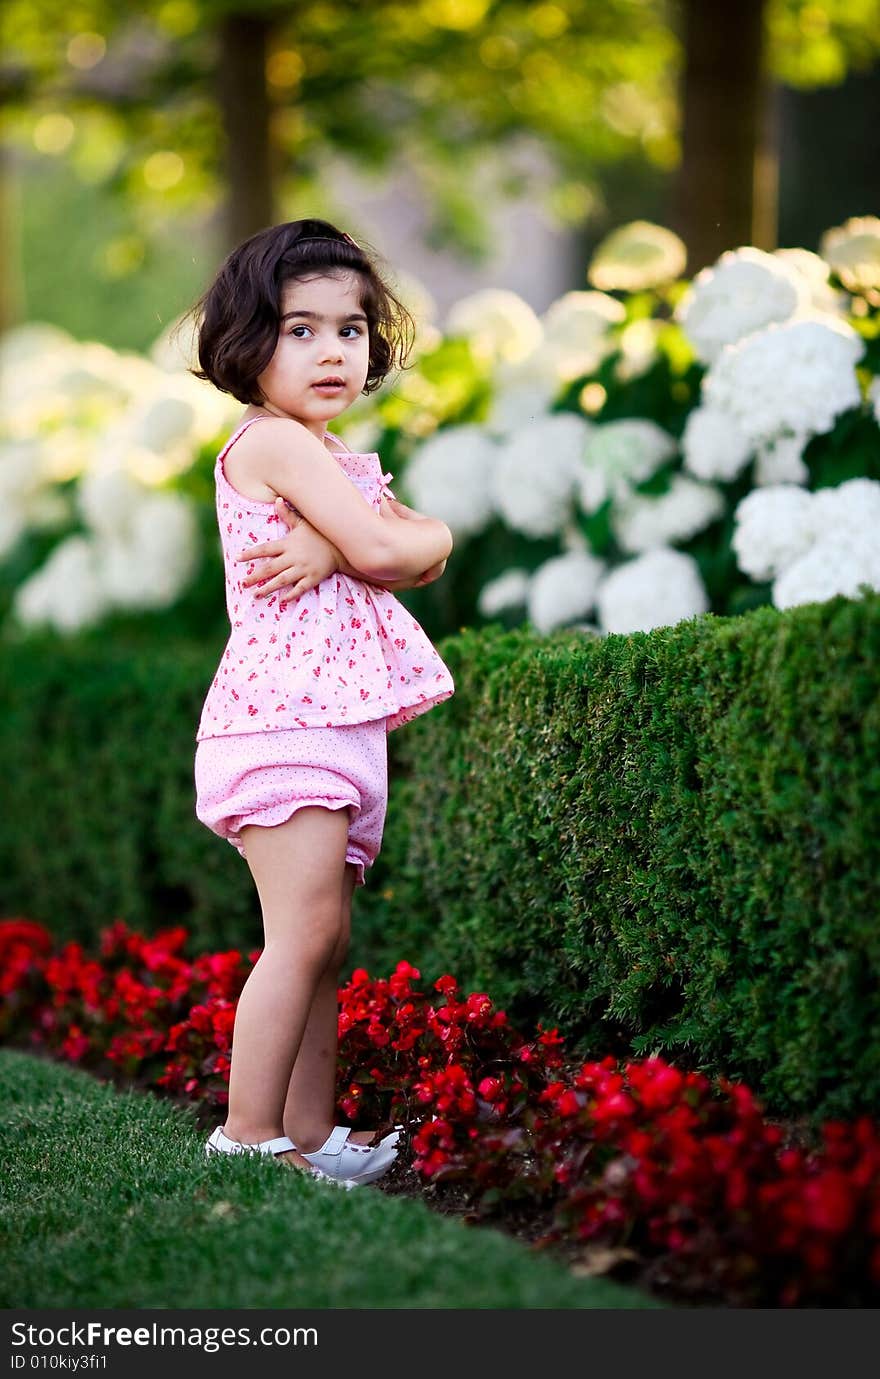 Cute girl in a flower garden smelling flowers. Cute girl in a flower garden smelling flowers